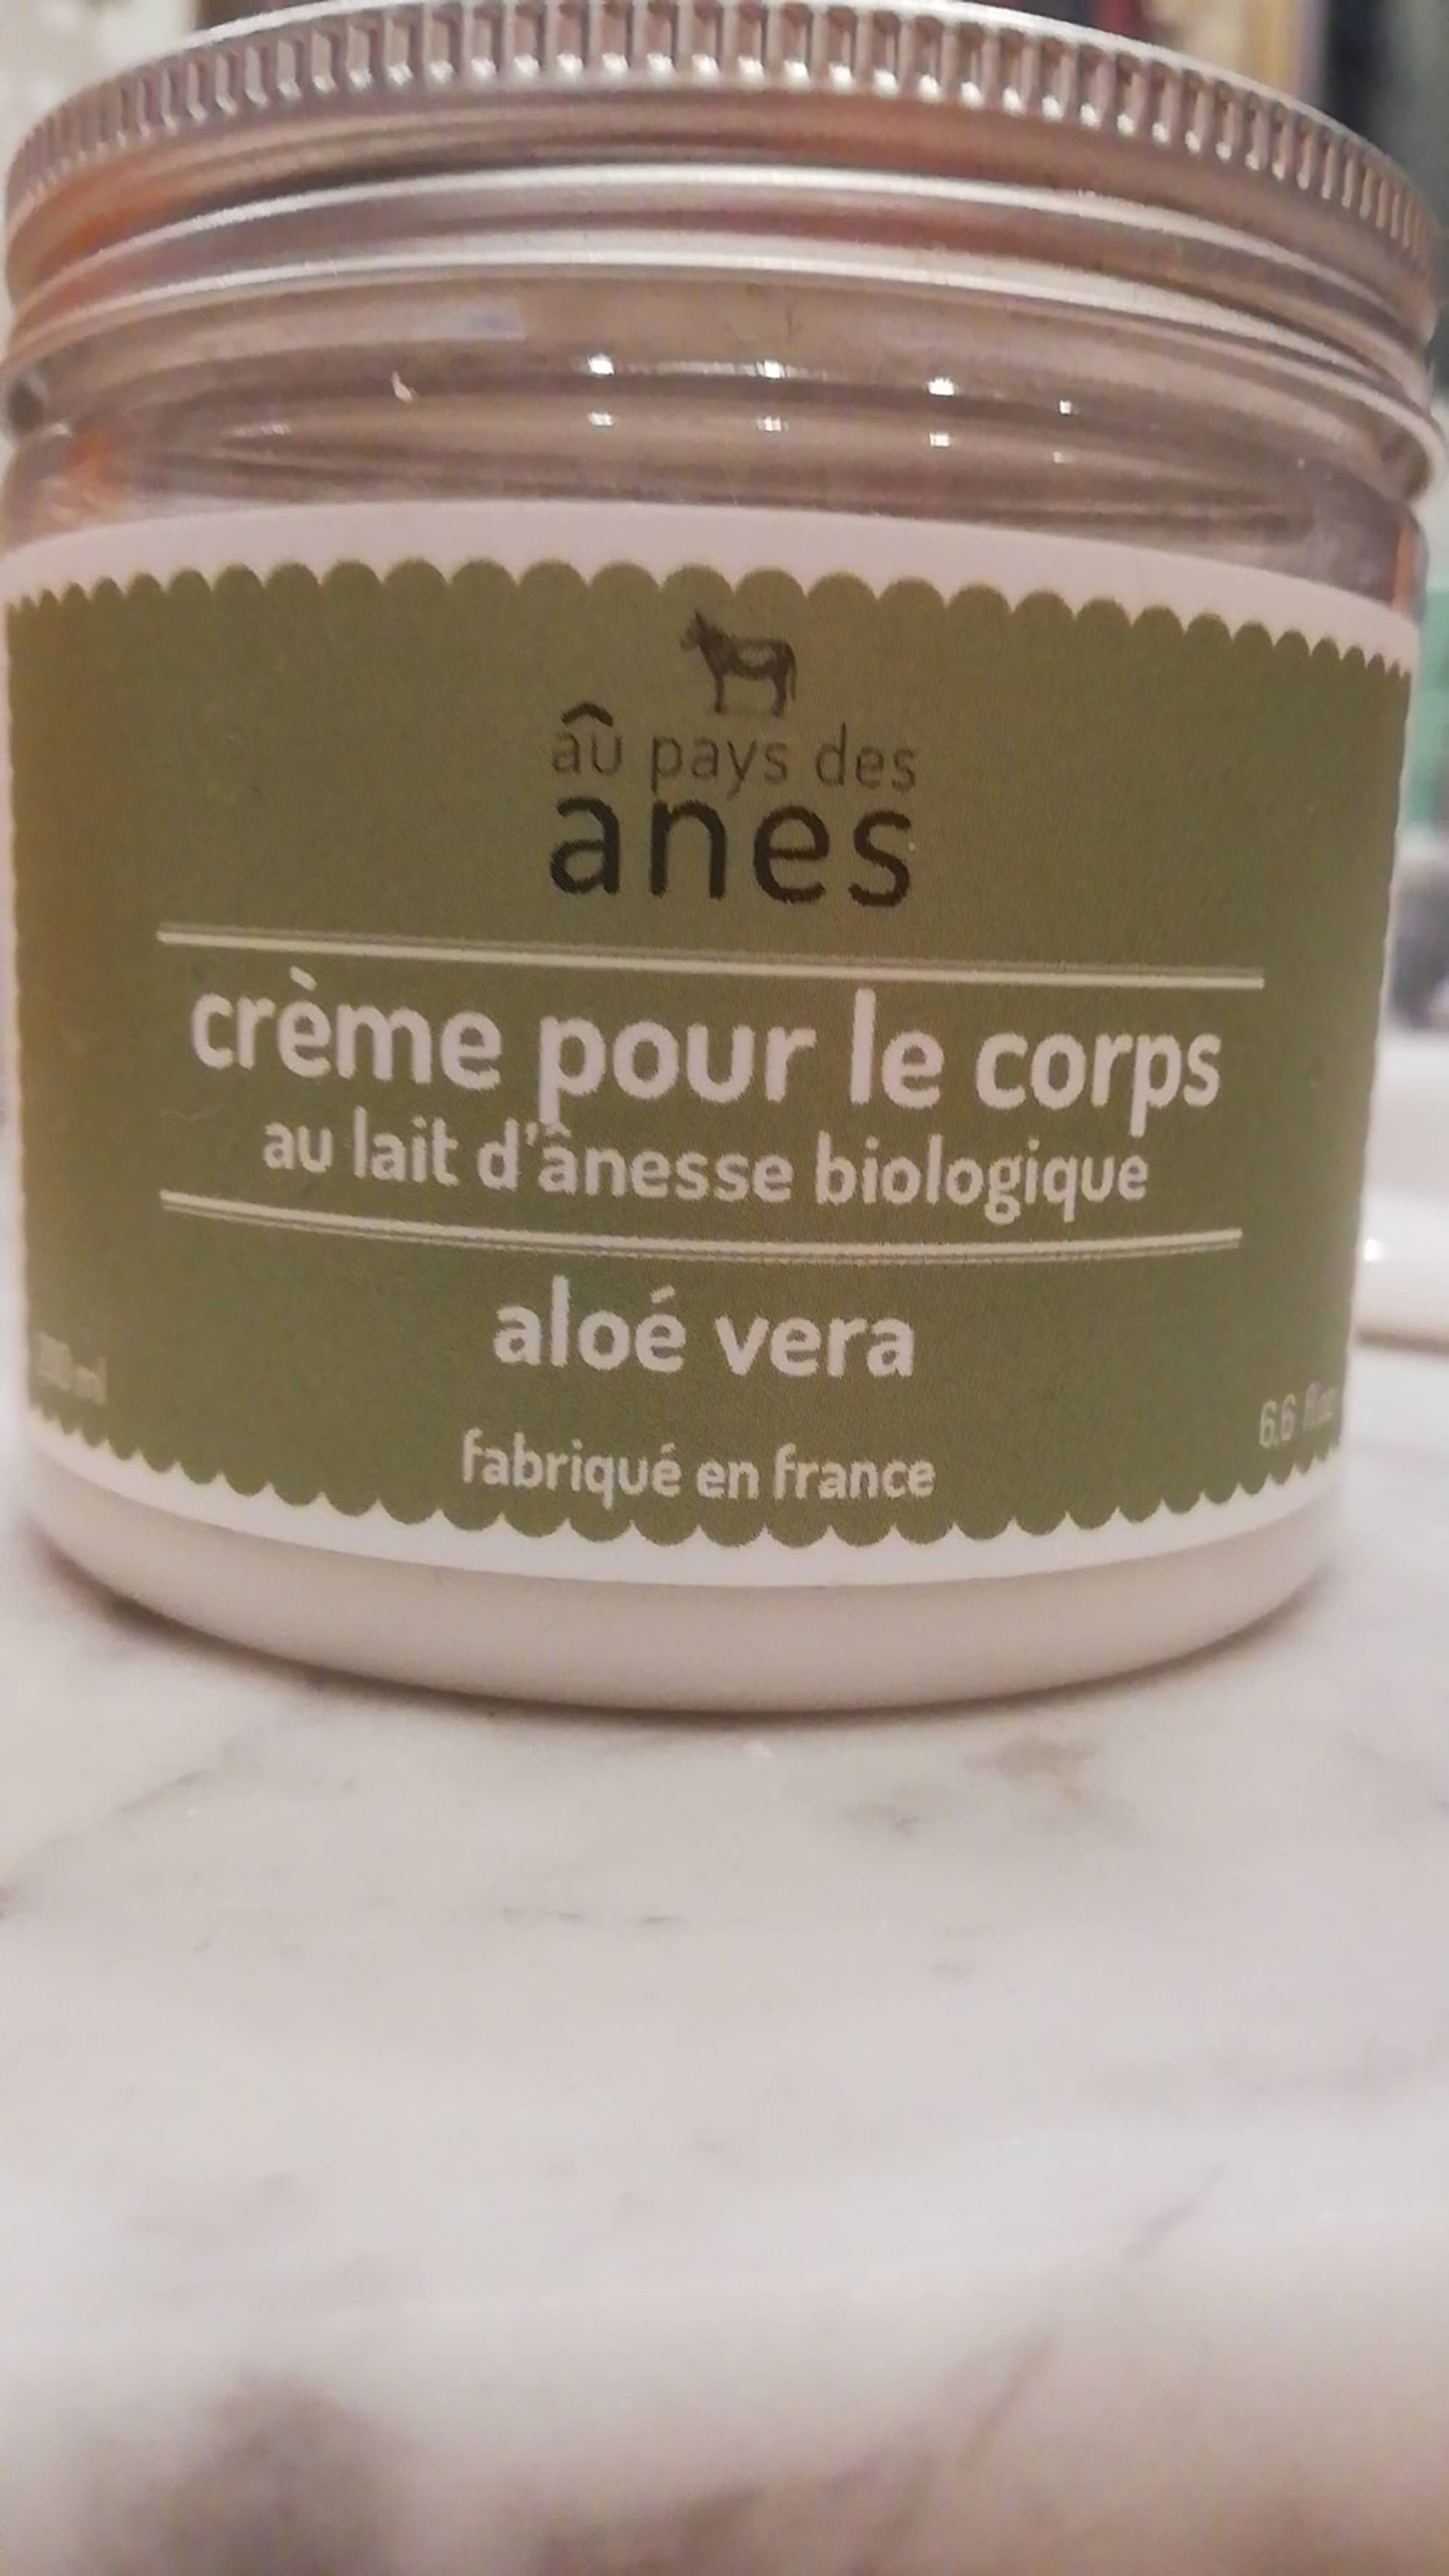 AU PAYS DES ÂNES - Crème pour le corps au lait d'ânesse - Aloé vera